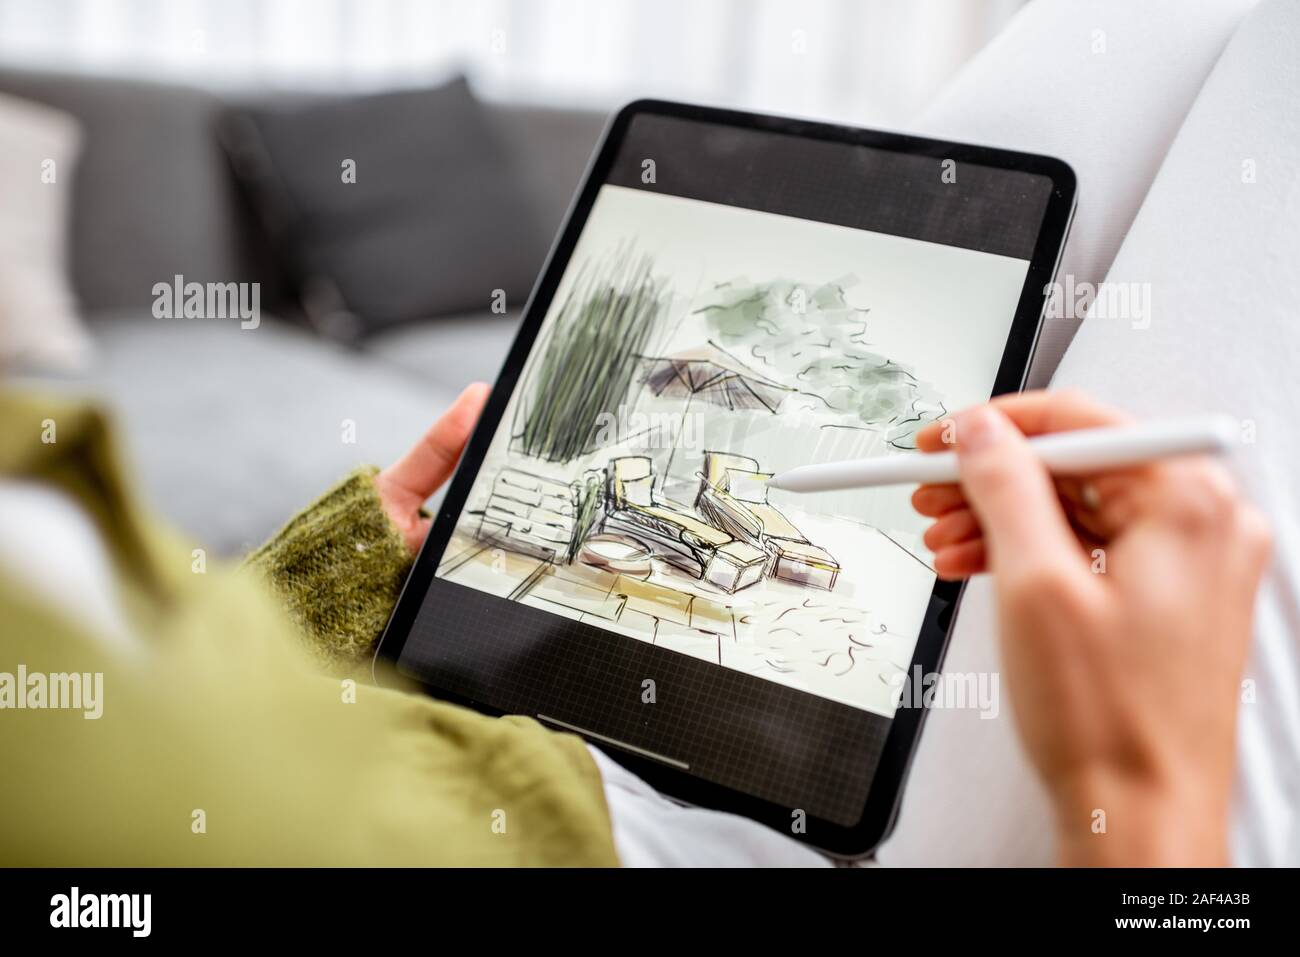 Artiste ou designer faisant la conception de paysage, dessin sur une tablette numérique avec crayon, gros plan sur un écran. La conception numérique sur un concept touchpad Banque D'Images